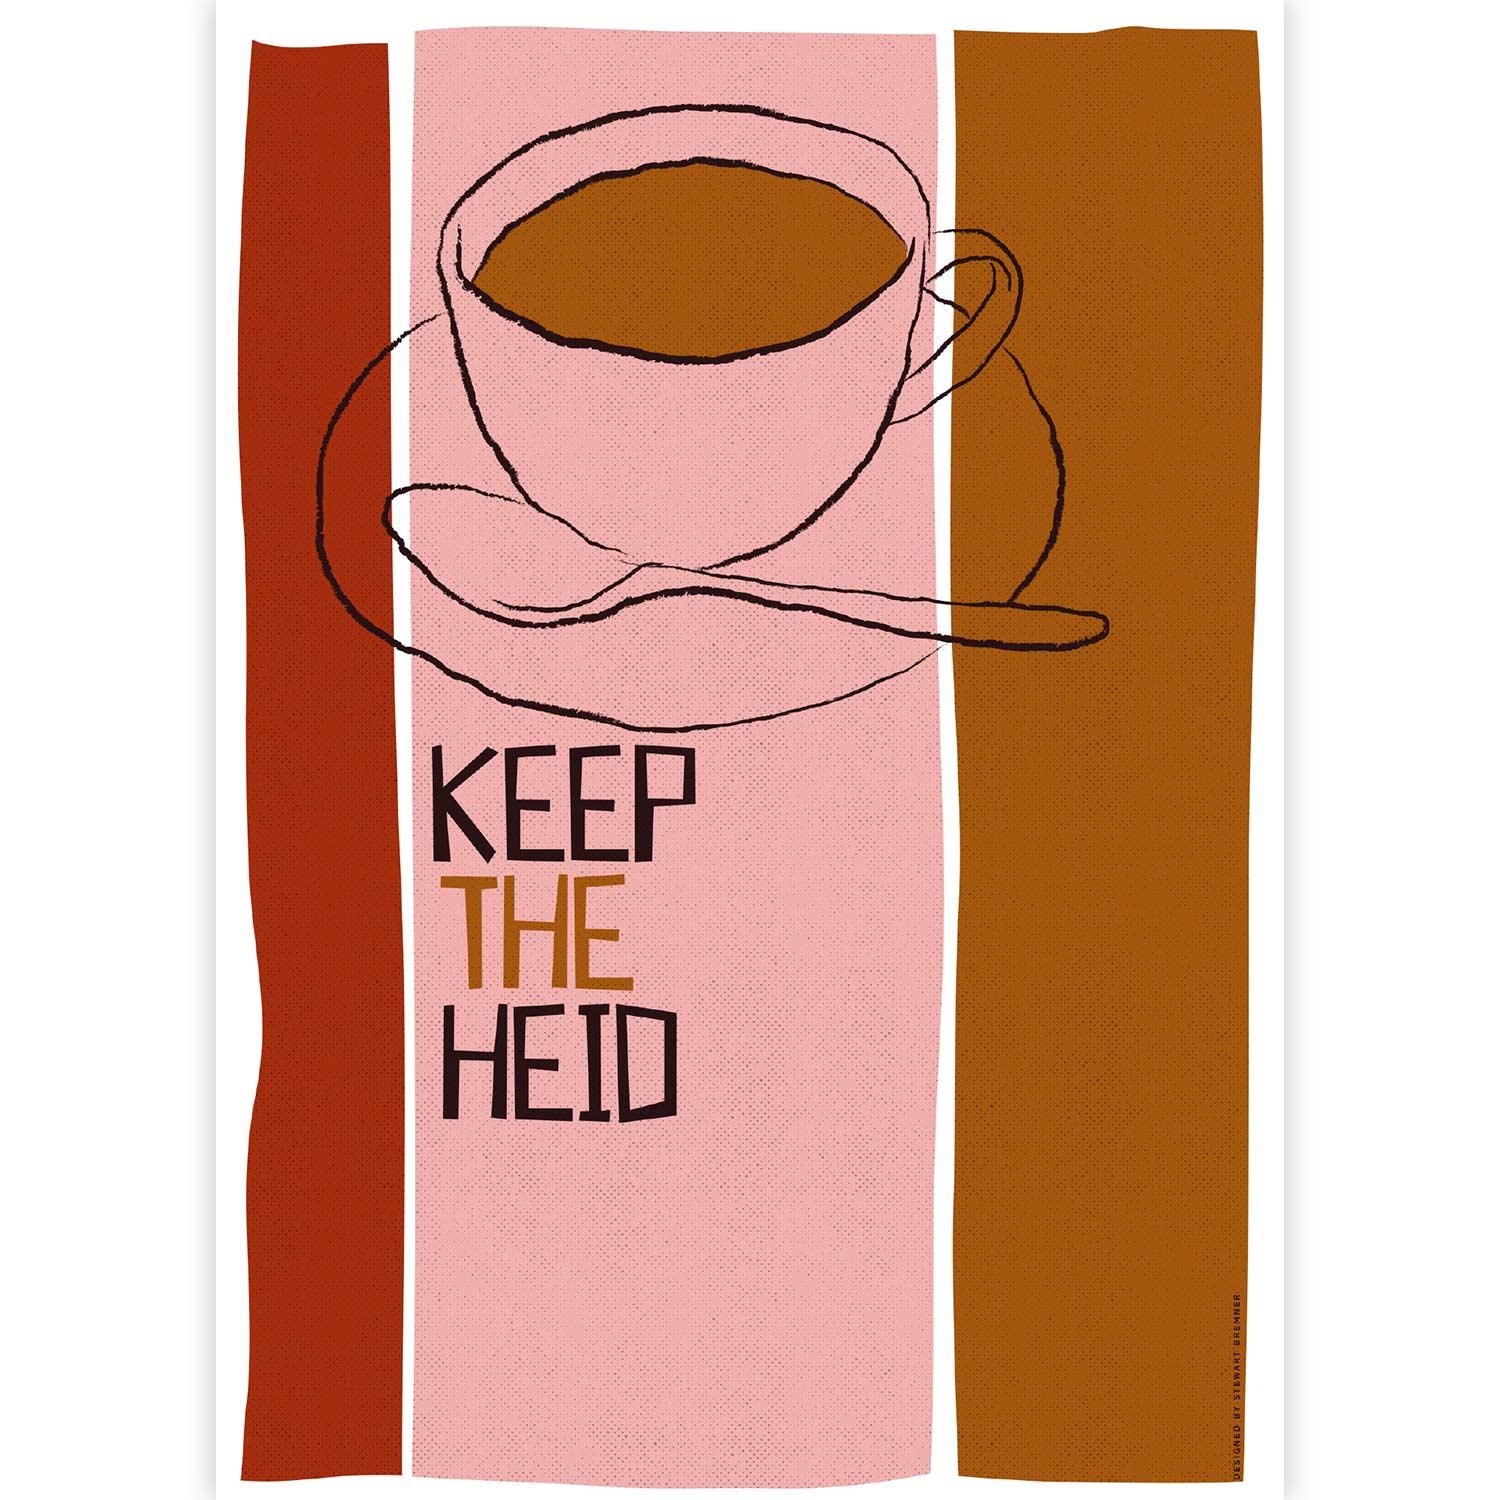 Keep the Heid by Stewart Bremner